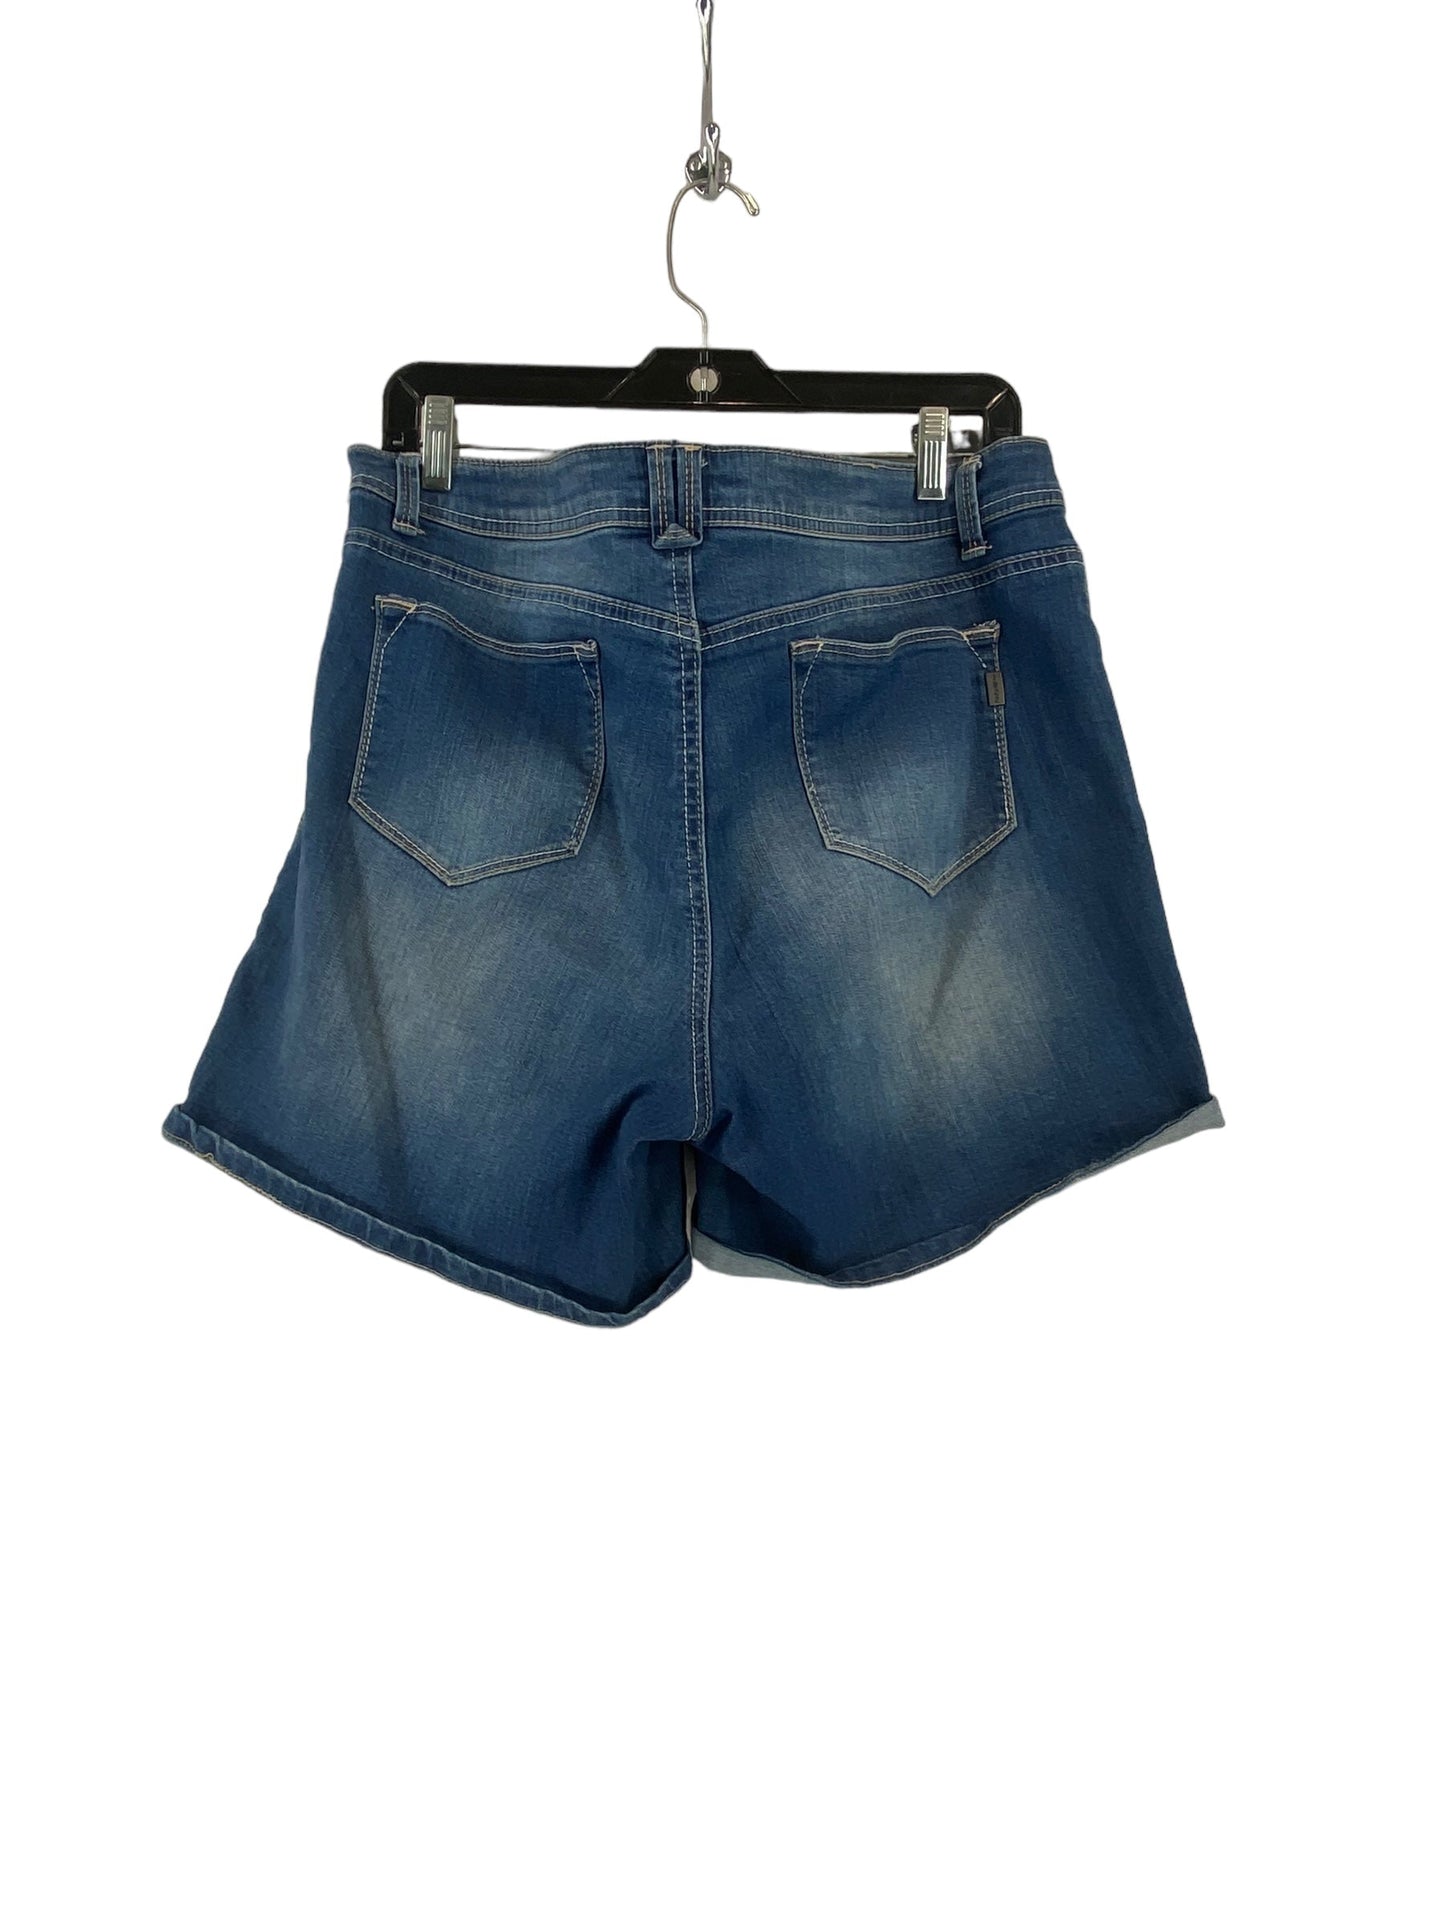 Blue Denim Shorts 1822 Denim, Size 16